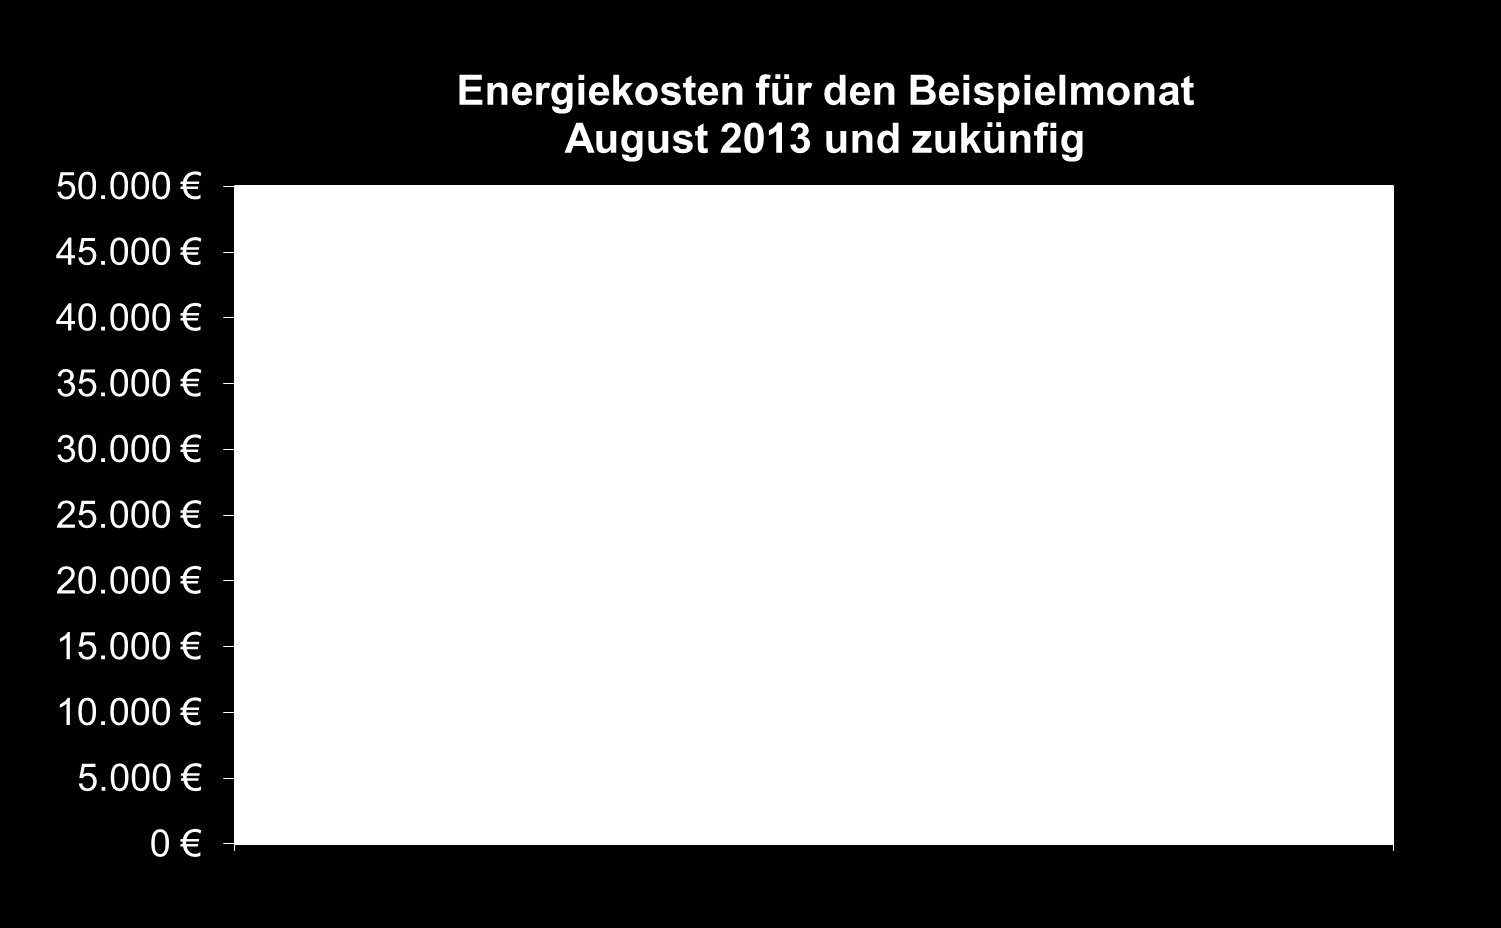 Energiesituation Einsparung für den Beispielmonat August 2013 mit